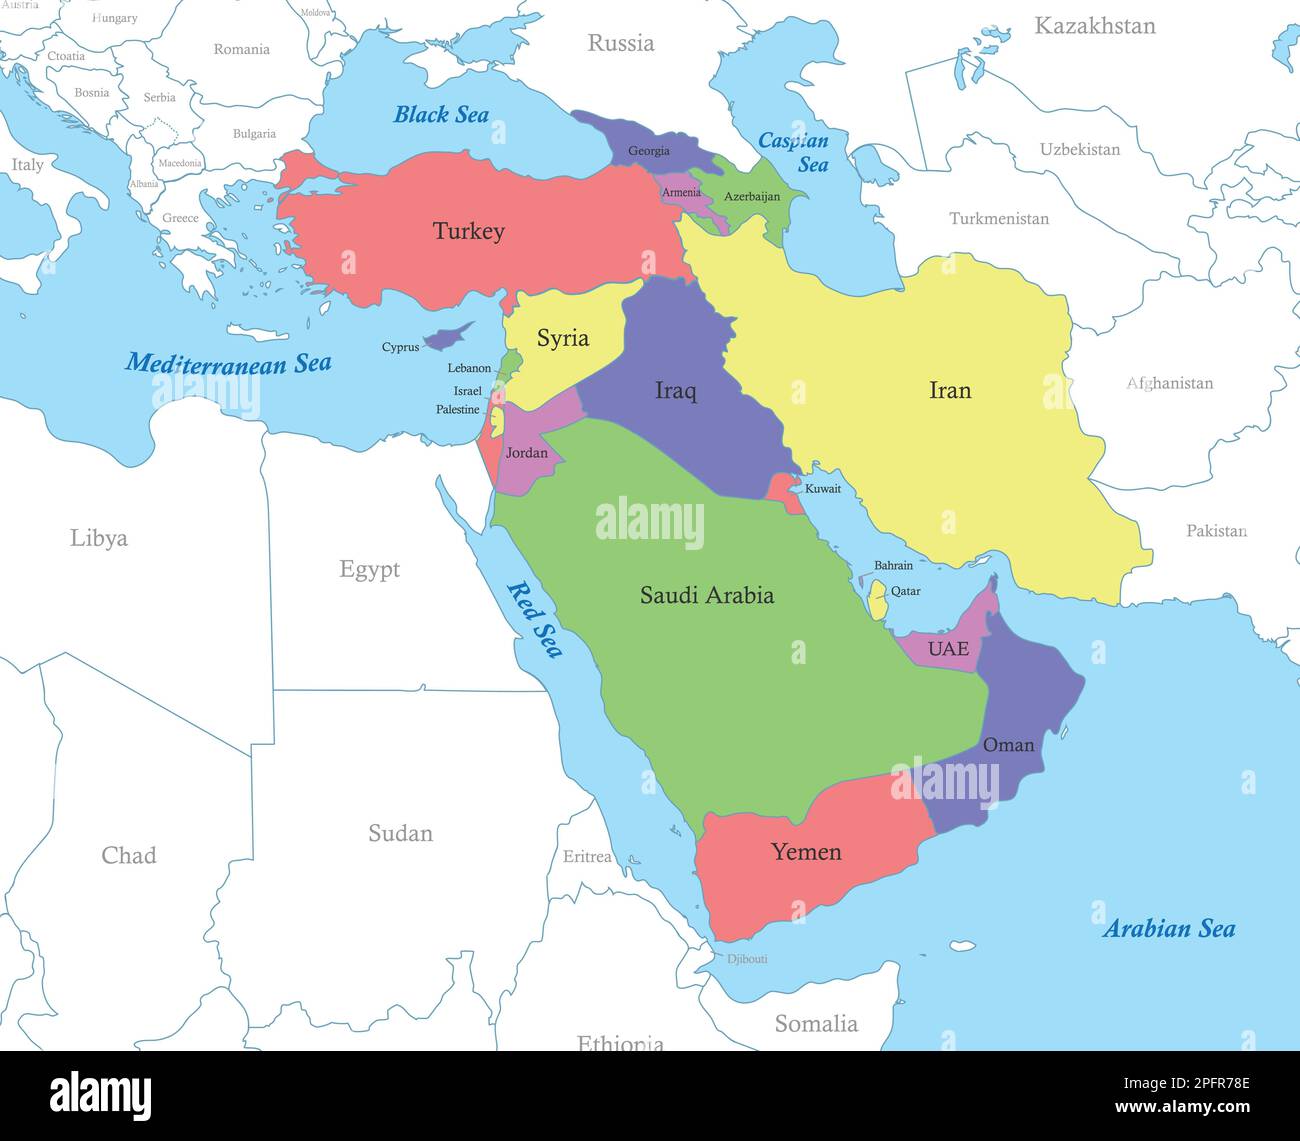 Mappa a colori politica dell'Asia occidentale con i confini degli stati. Illustrazione Vettoriale